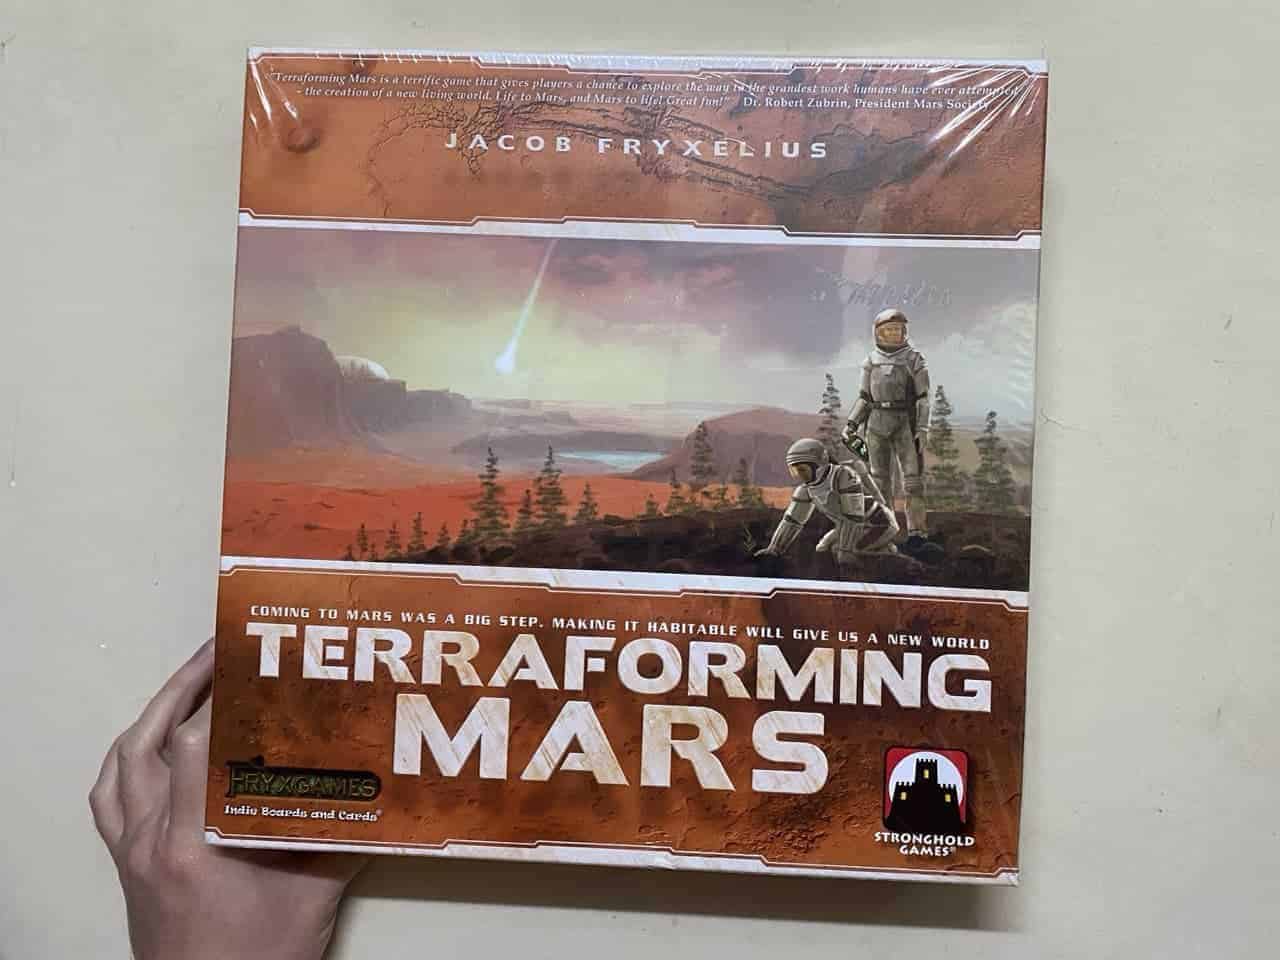 Board Game分享-Terraforming Mars 殖民火星-體驗發展外太空星球